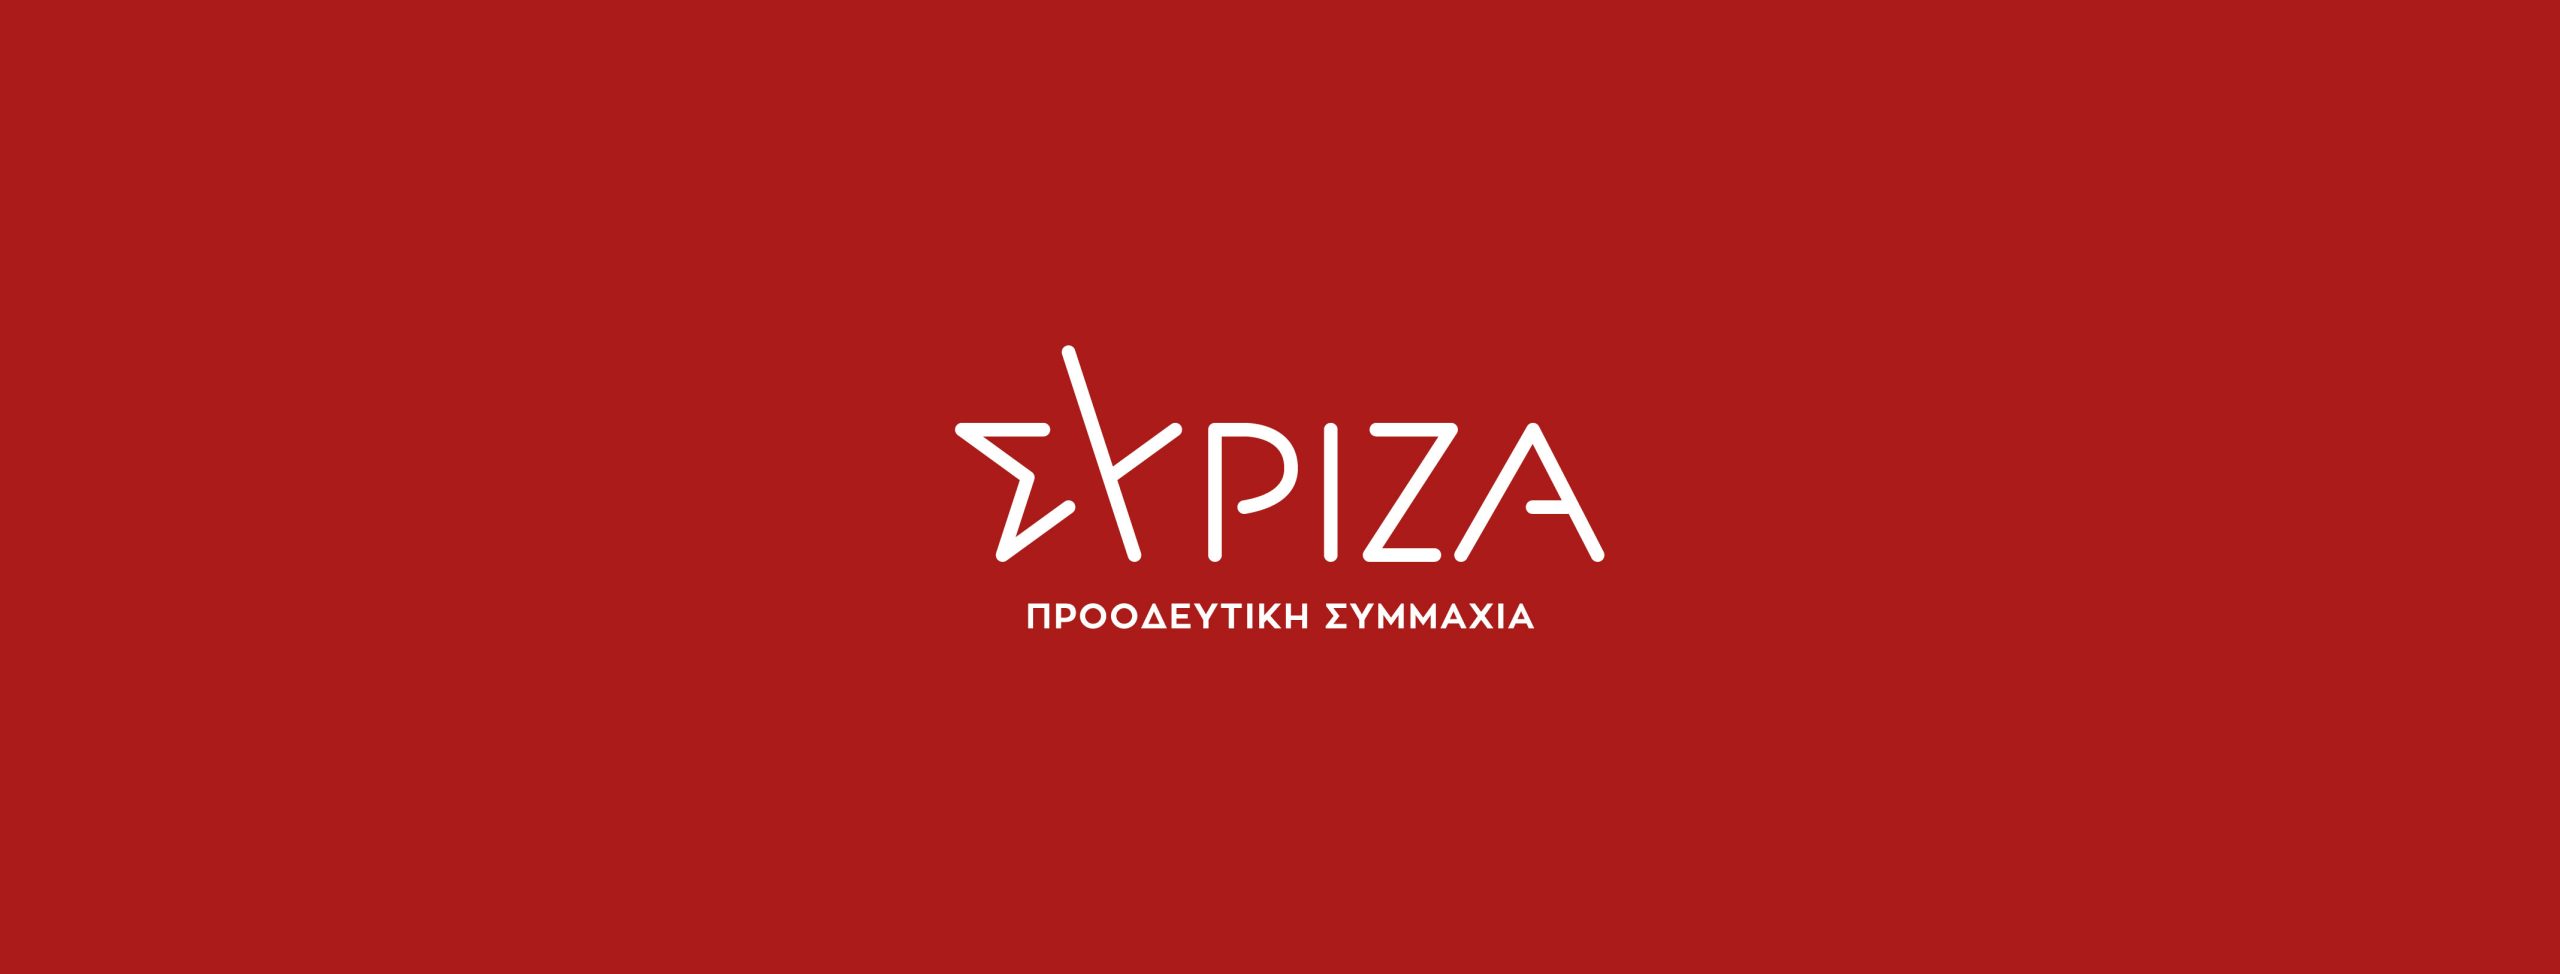 ΣΥΡΙΖΑ: «Ο Κ.Μητσοτάκης να σταματήσει να δουλεύει τον κόσμο και να αποσύρει άμεσα τον πτωχευτικό κώδικα»